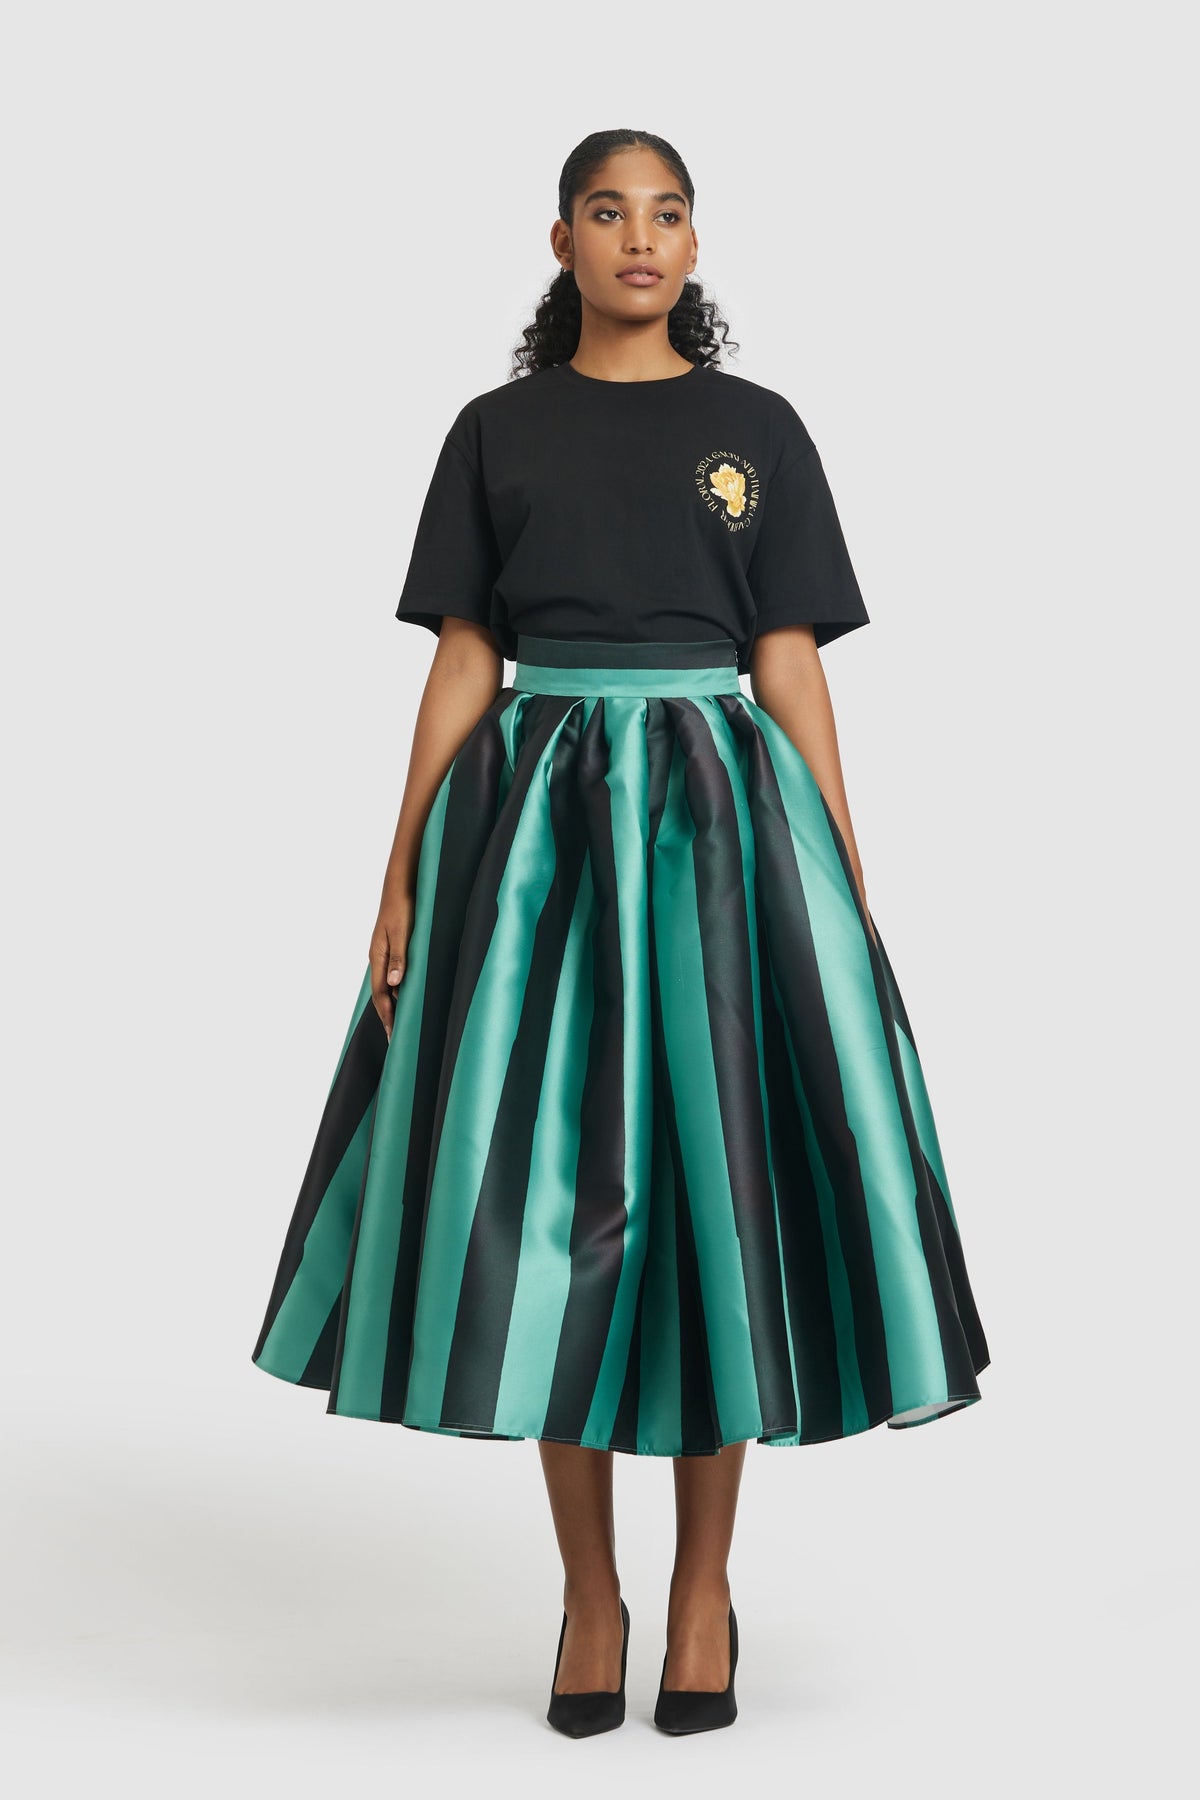 Green &amp; Black Striped Skirt